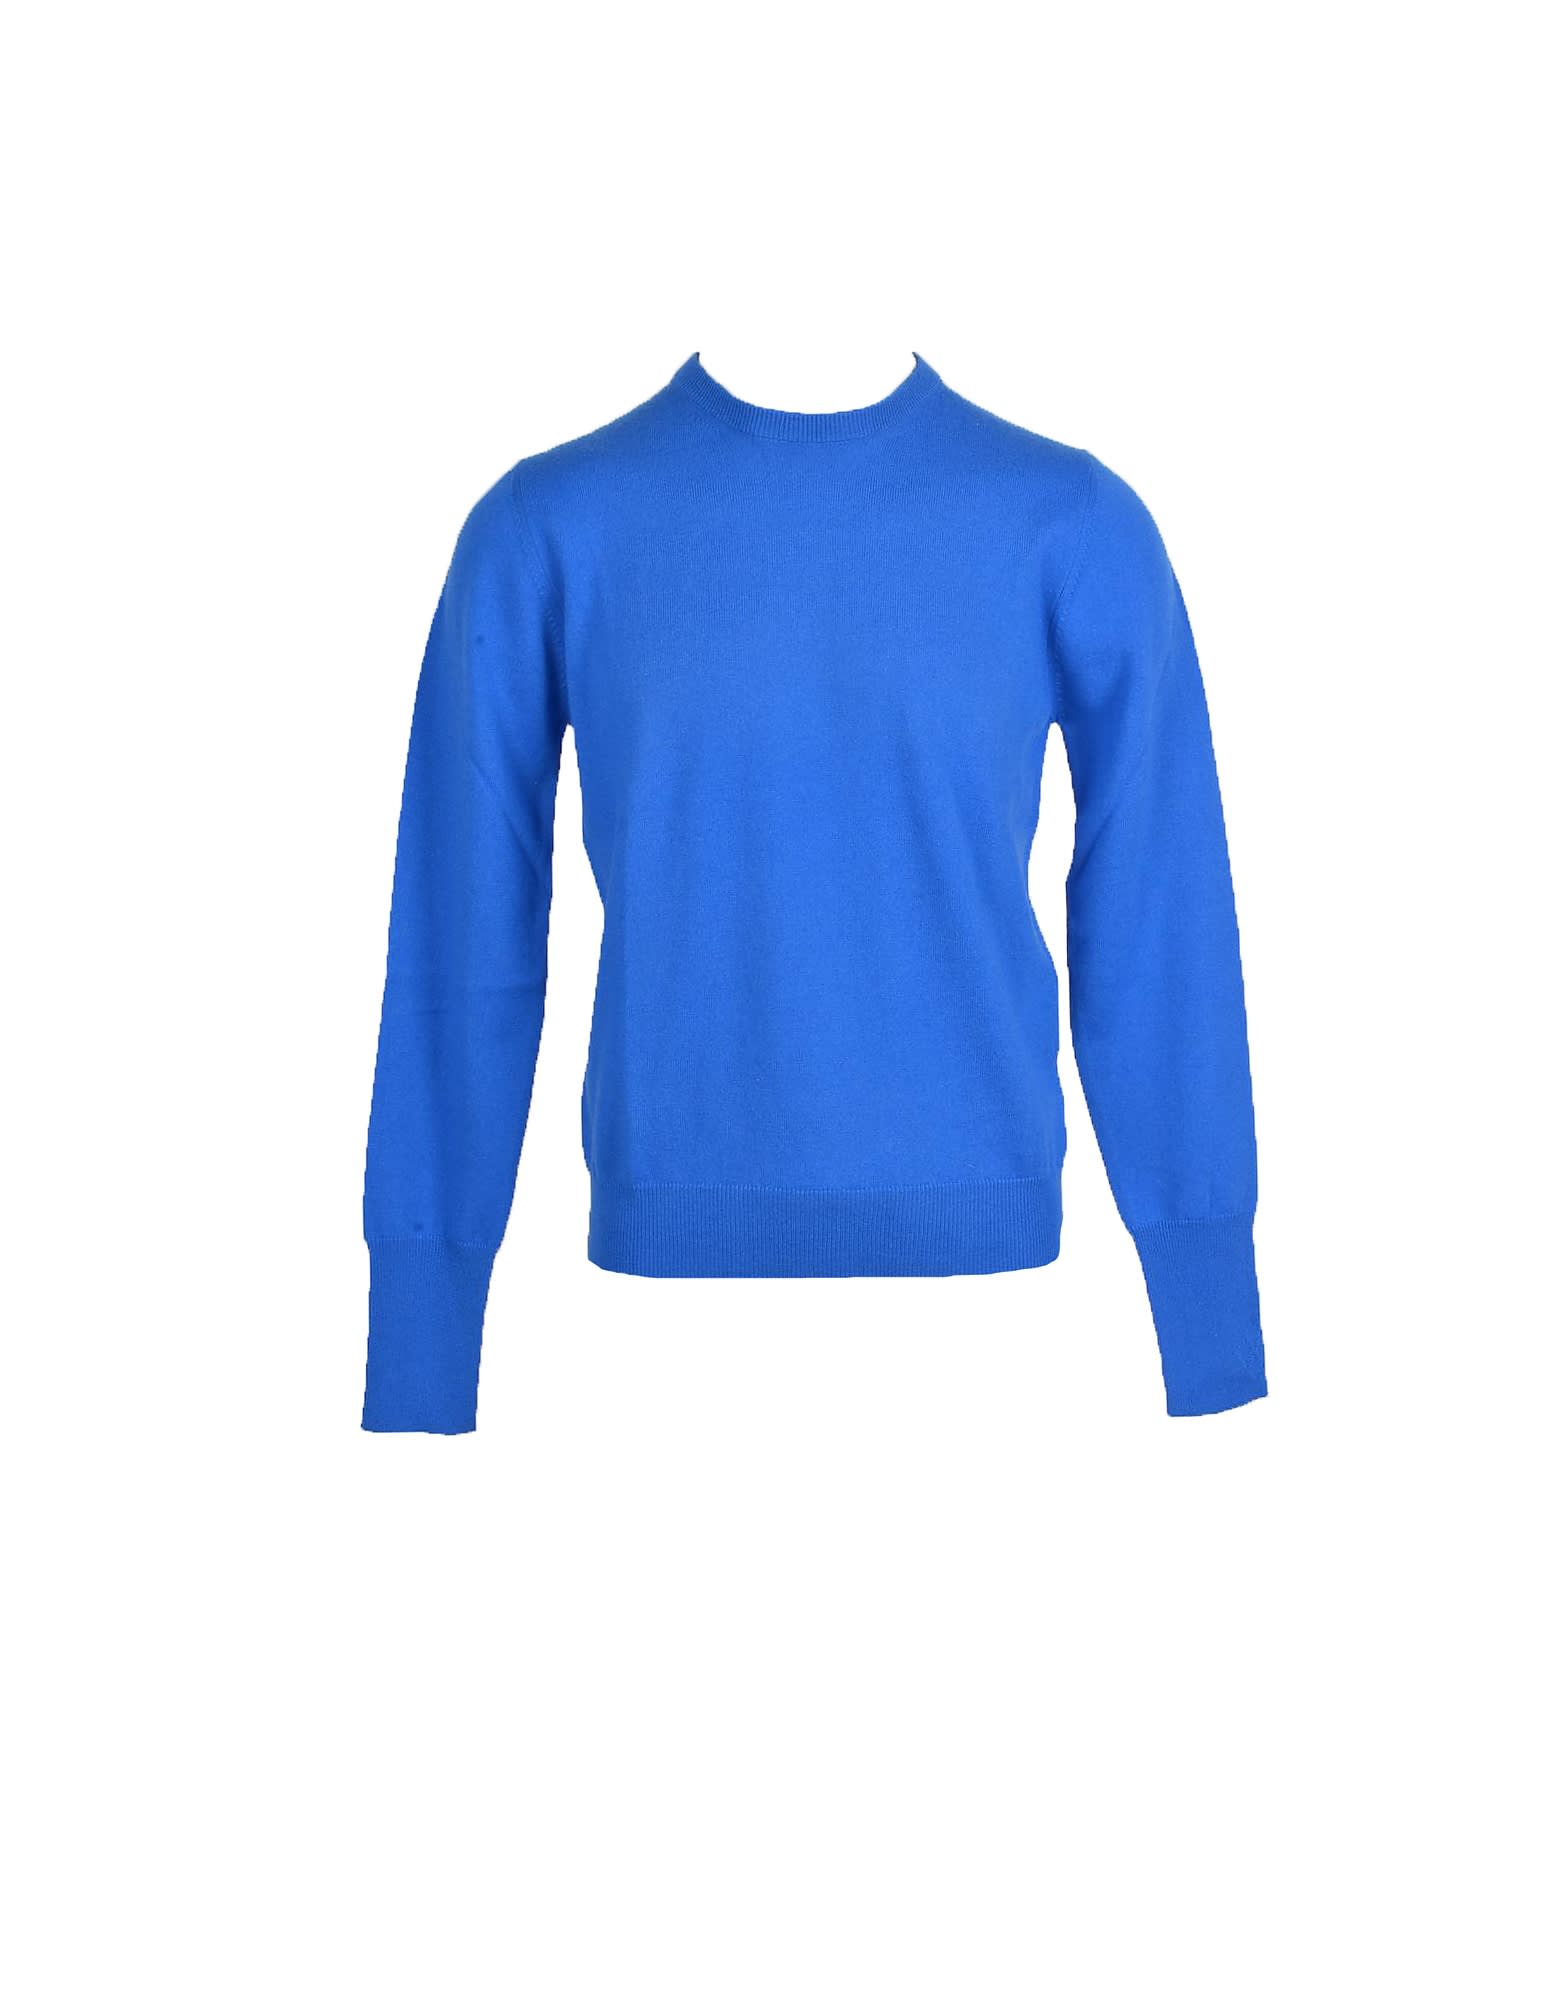 Ballantyne Mens Bluette Sweater